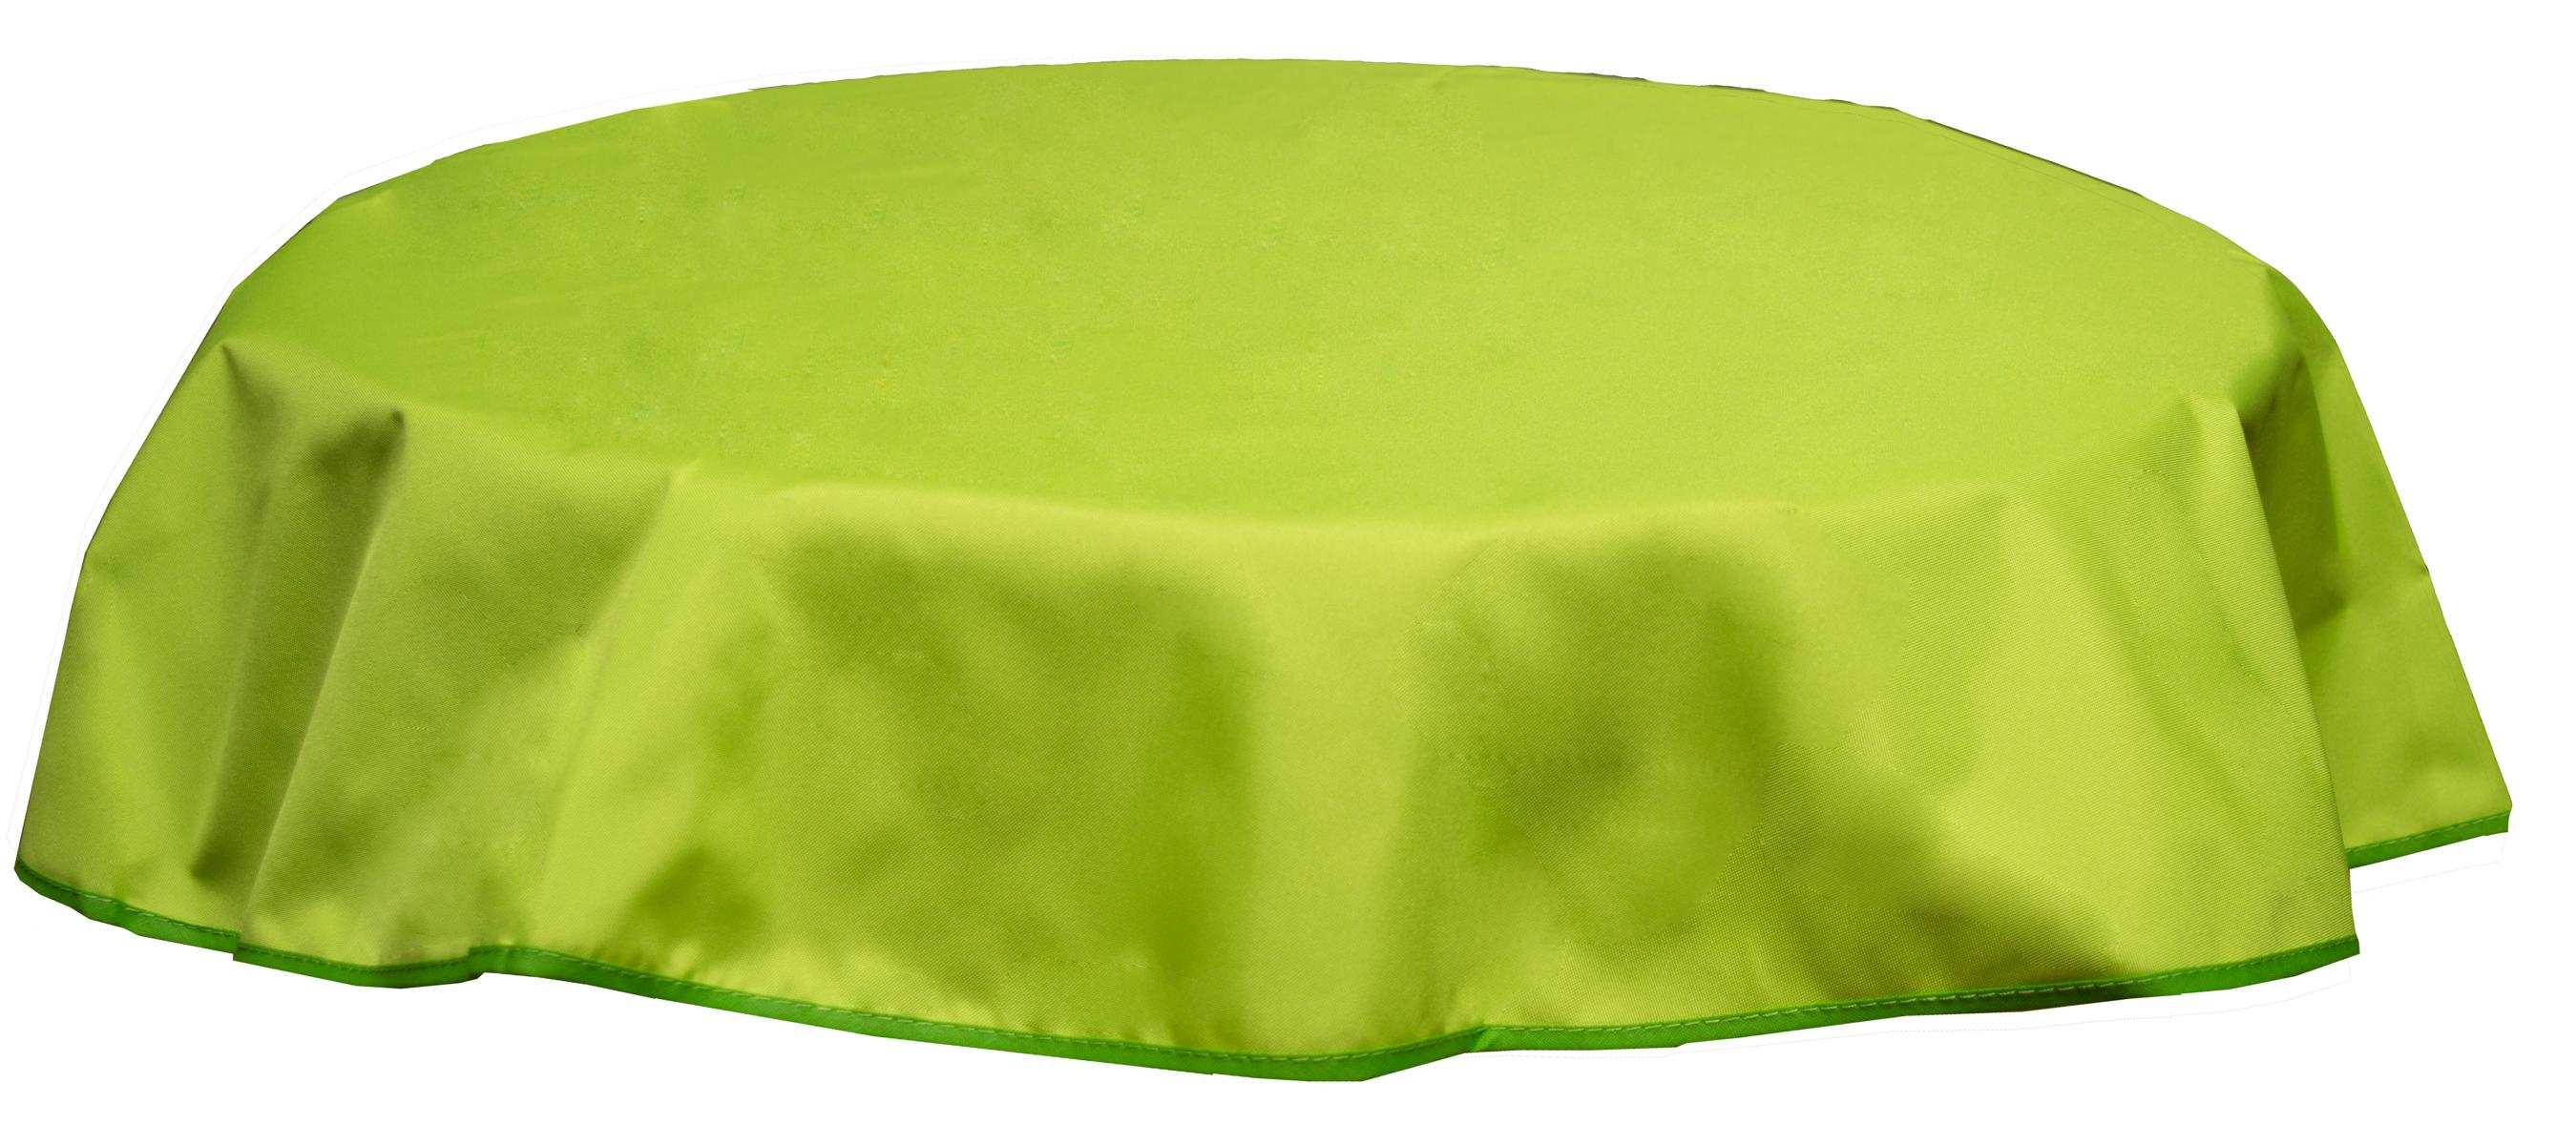 Runde Tischdecke 160cm wasserabweisend 100% Polyester in hellgrün